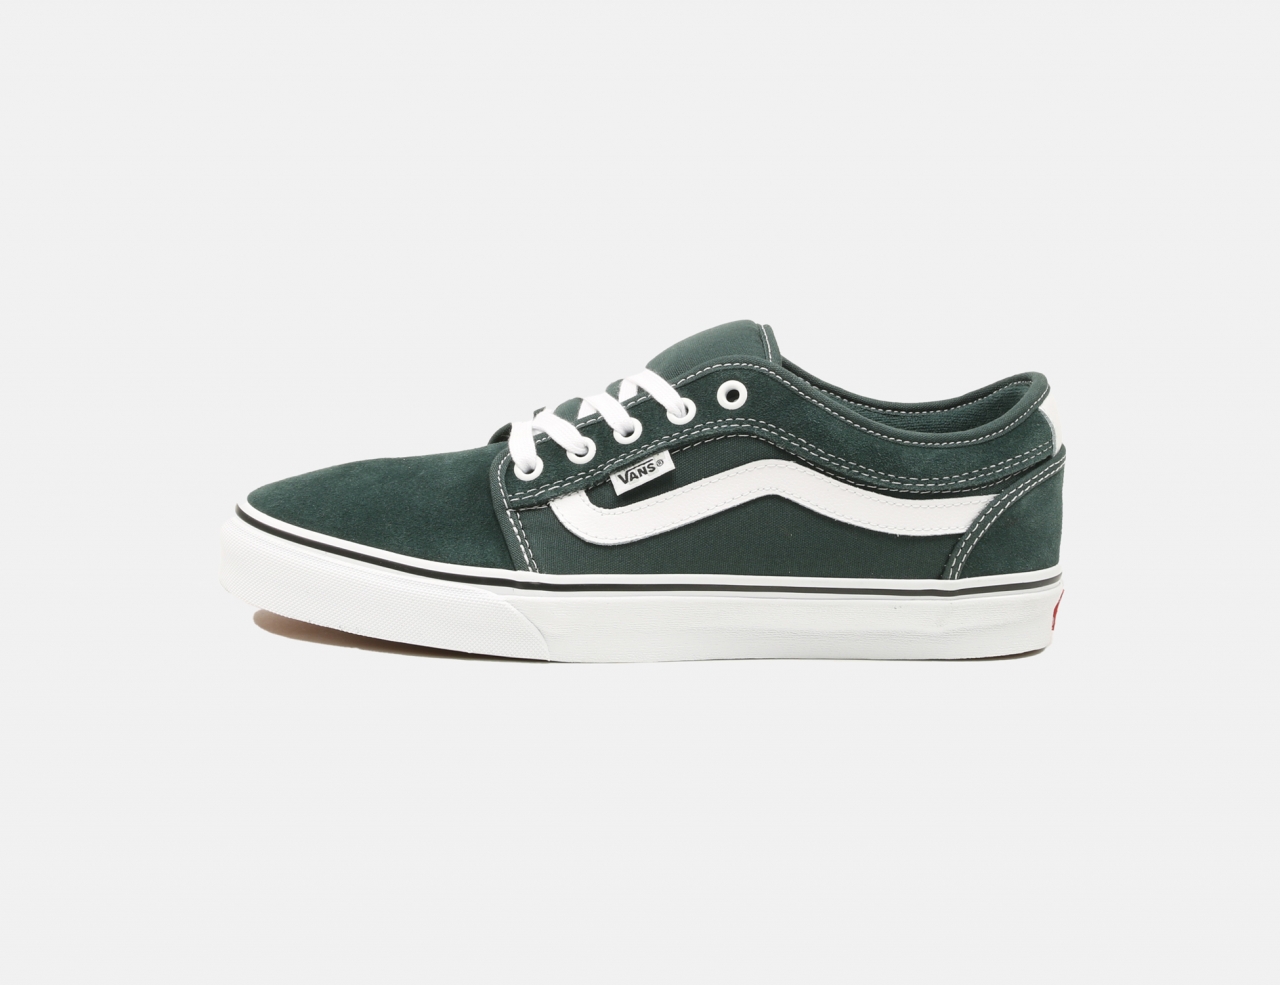 VANS MN Chukka Low Sidestripe Sneaker - Green Gables / True White